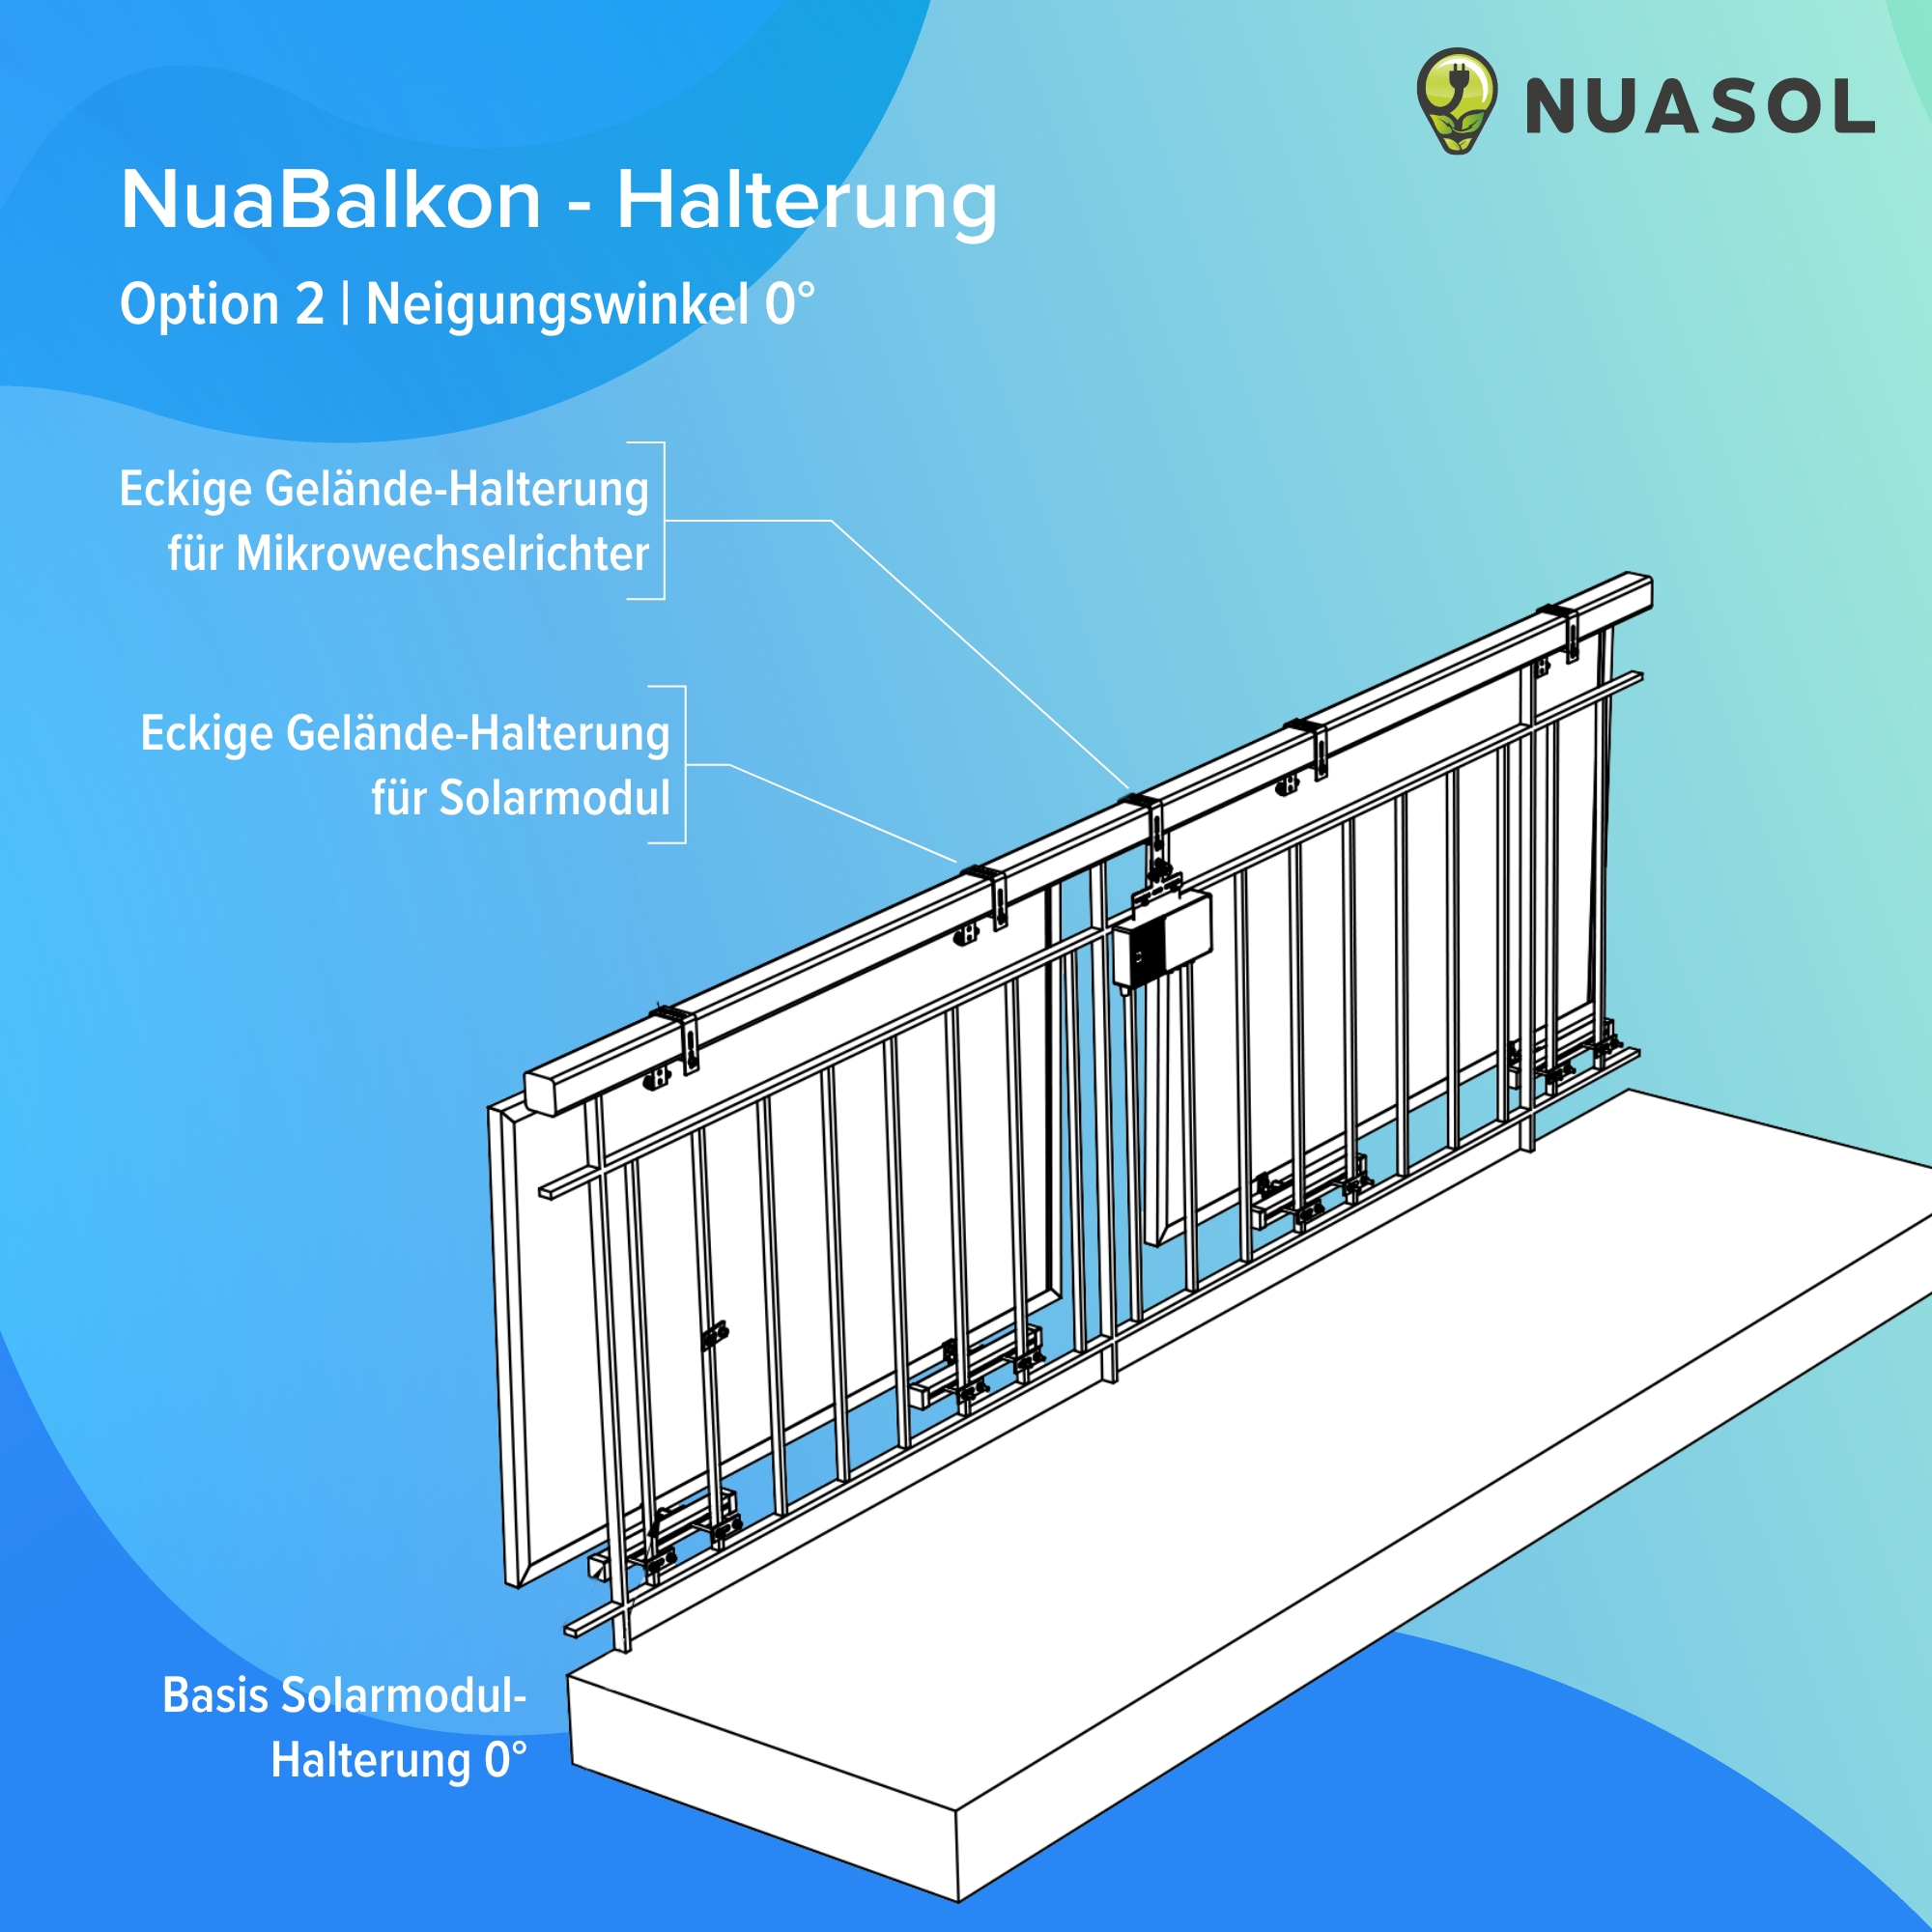 Balkonkraftwerk-Halterung: Edelstahl-Haken für eckige